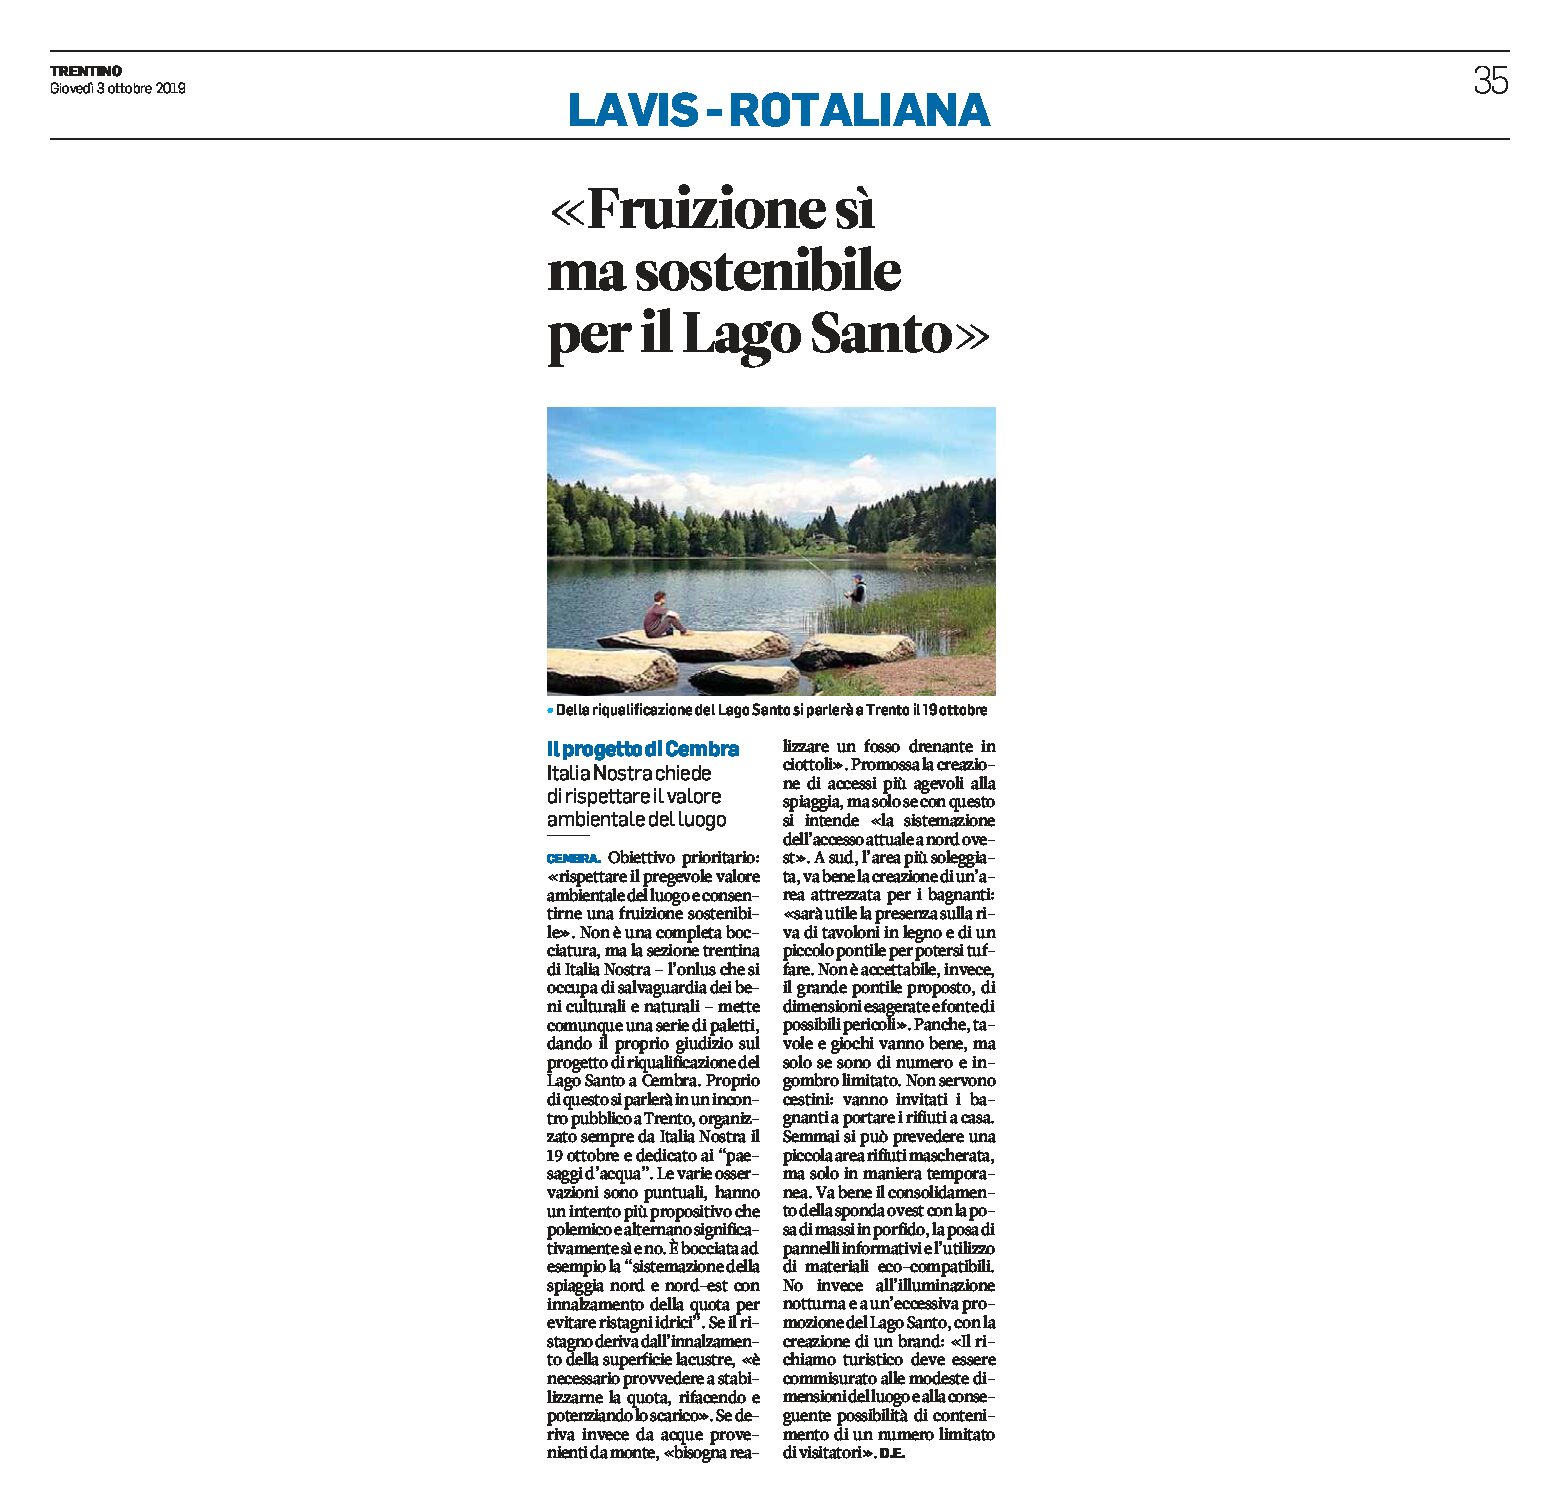 Lago santo: Italia Nostra “fruizione sì ma sostenibile per il lago”